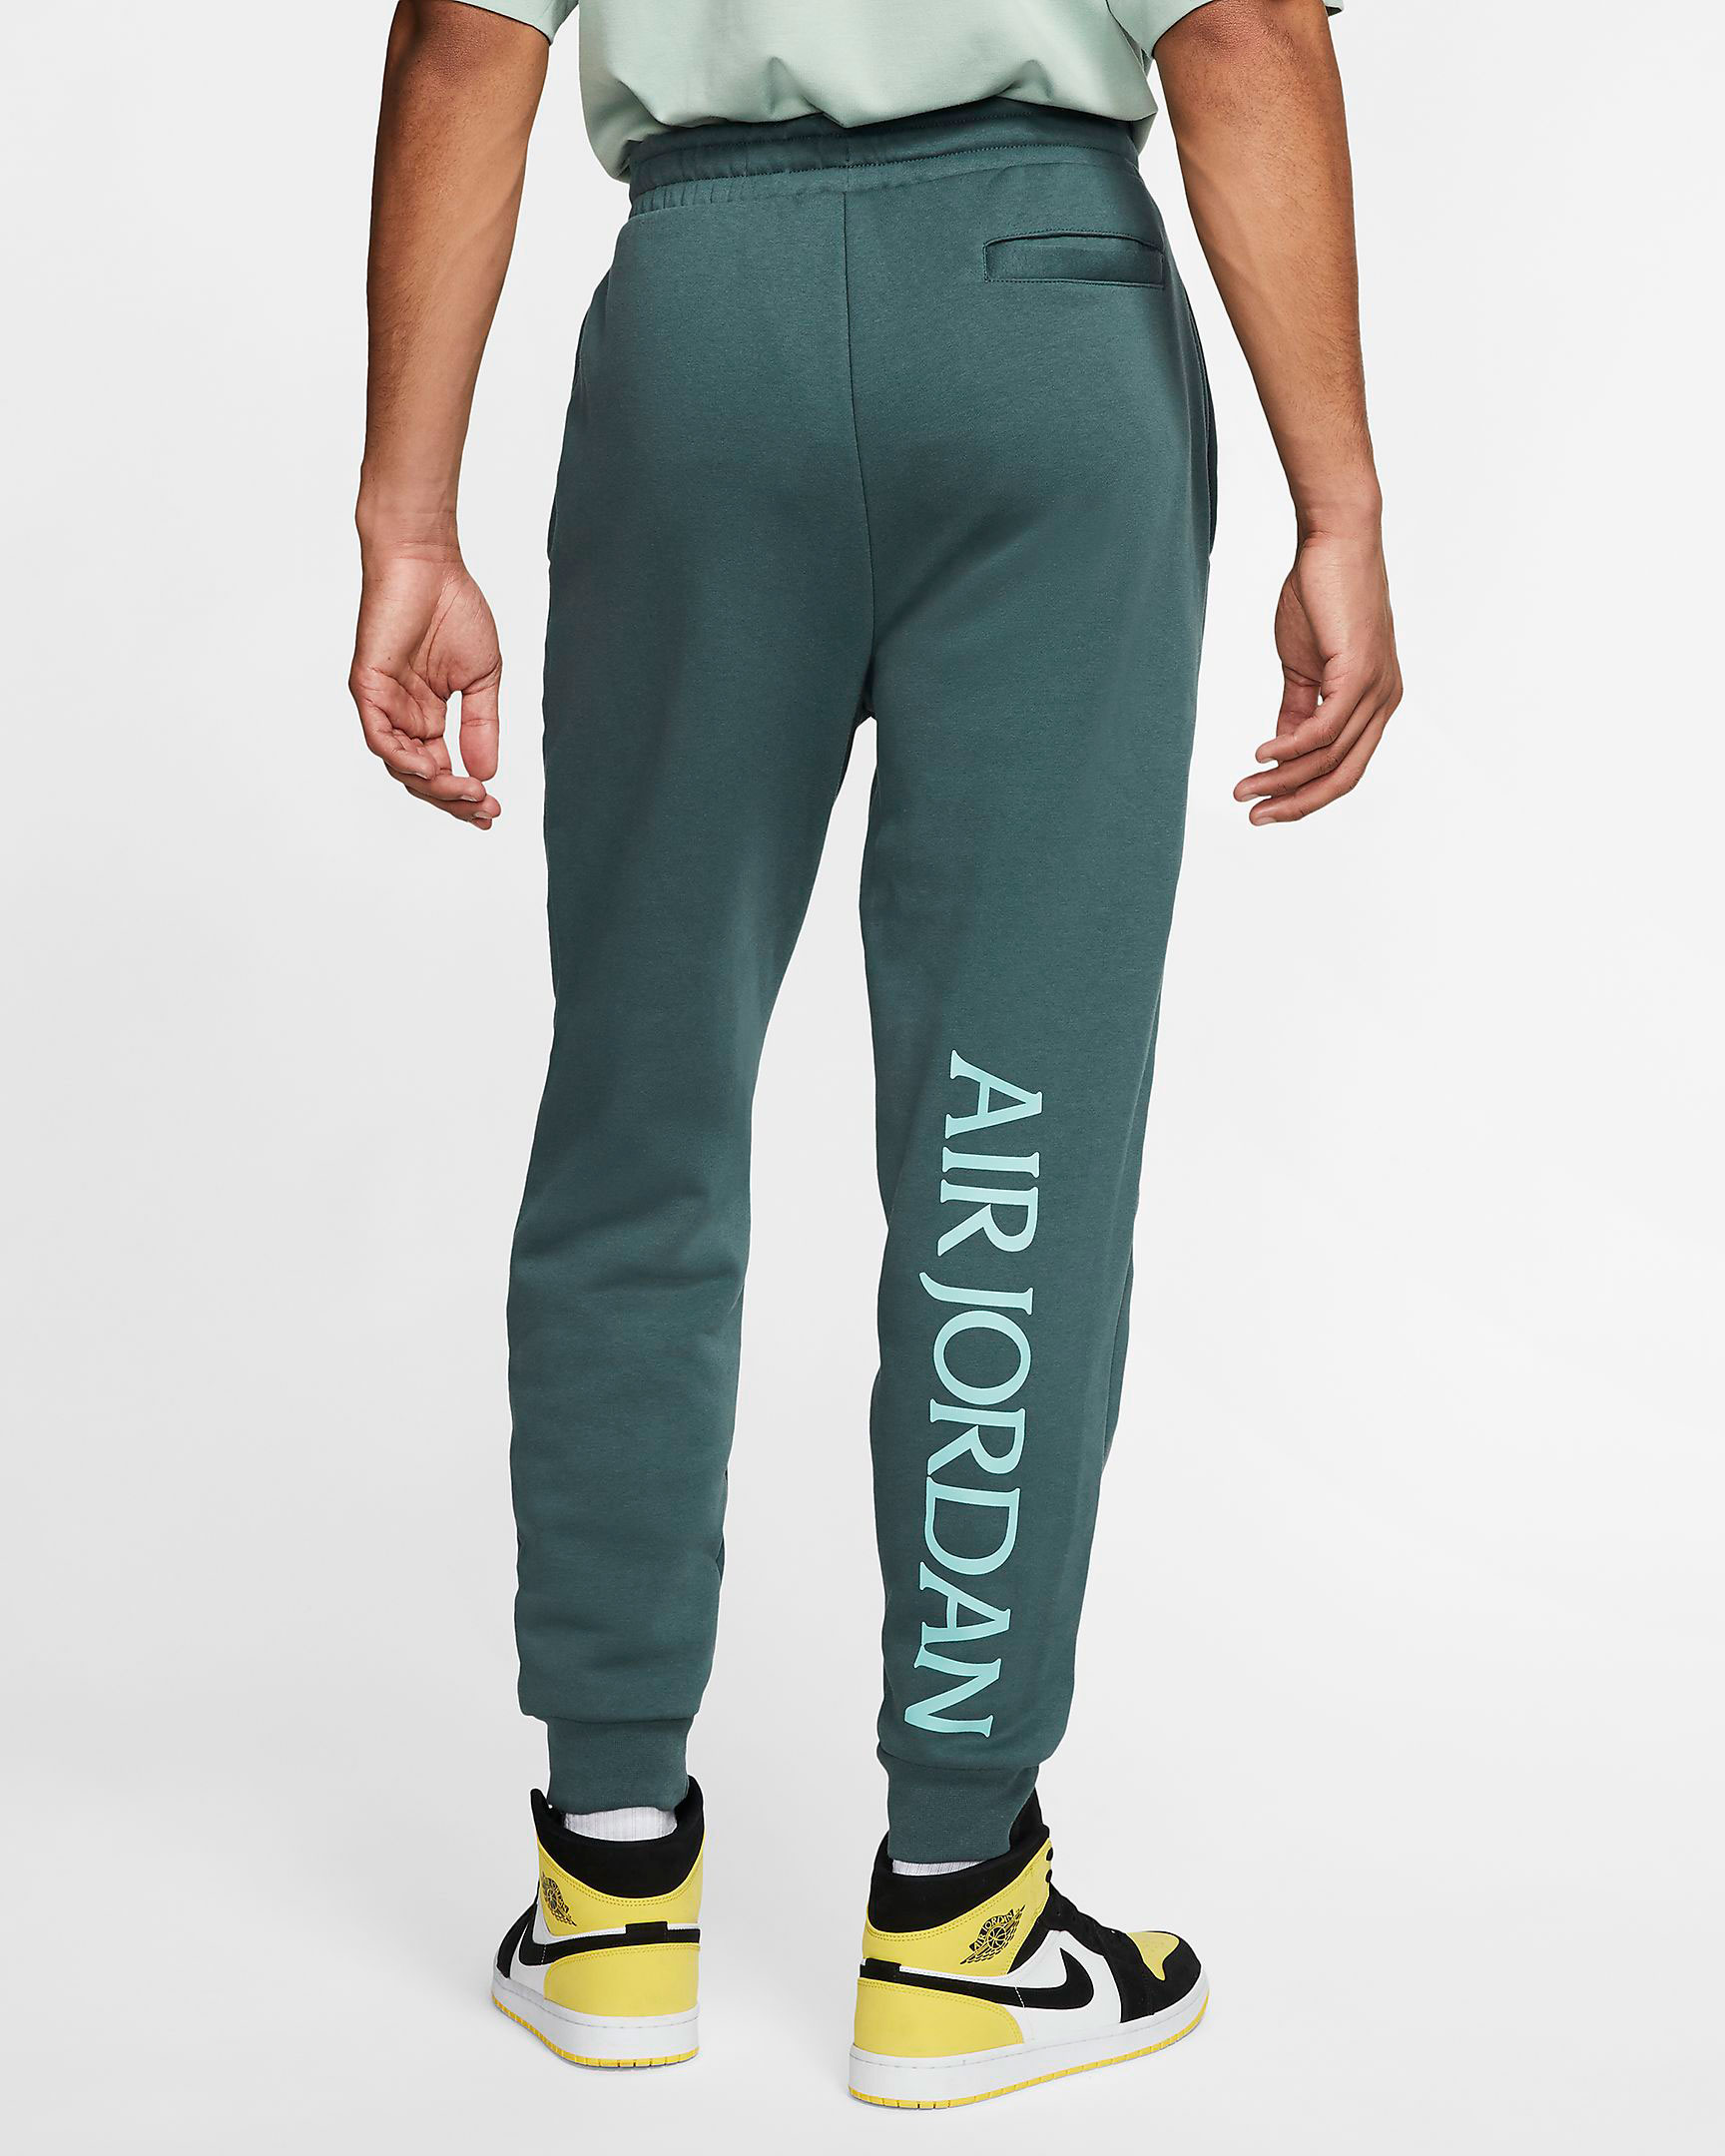 air-jordan-island-green-jogger-pants-2